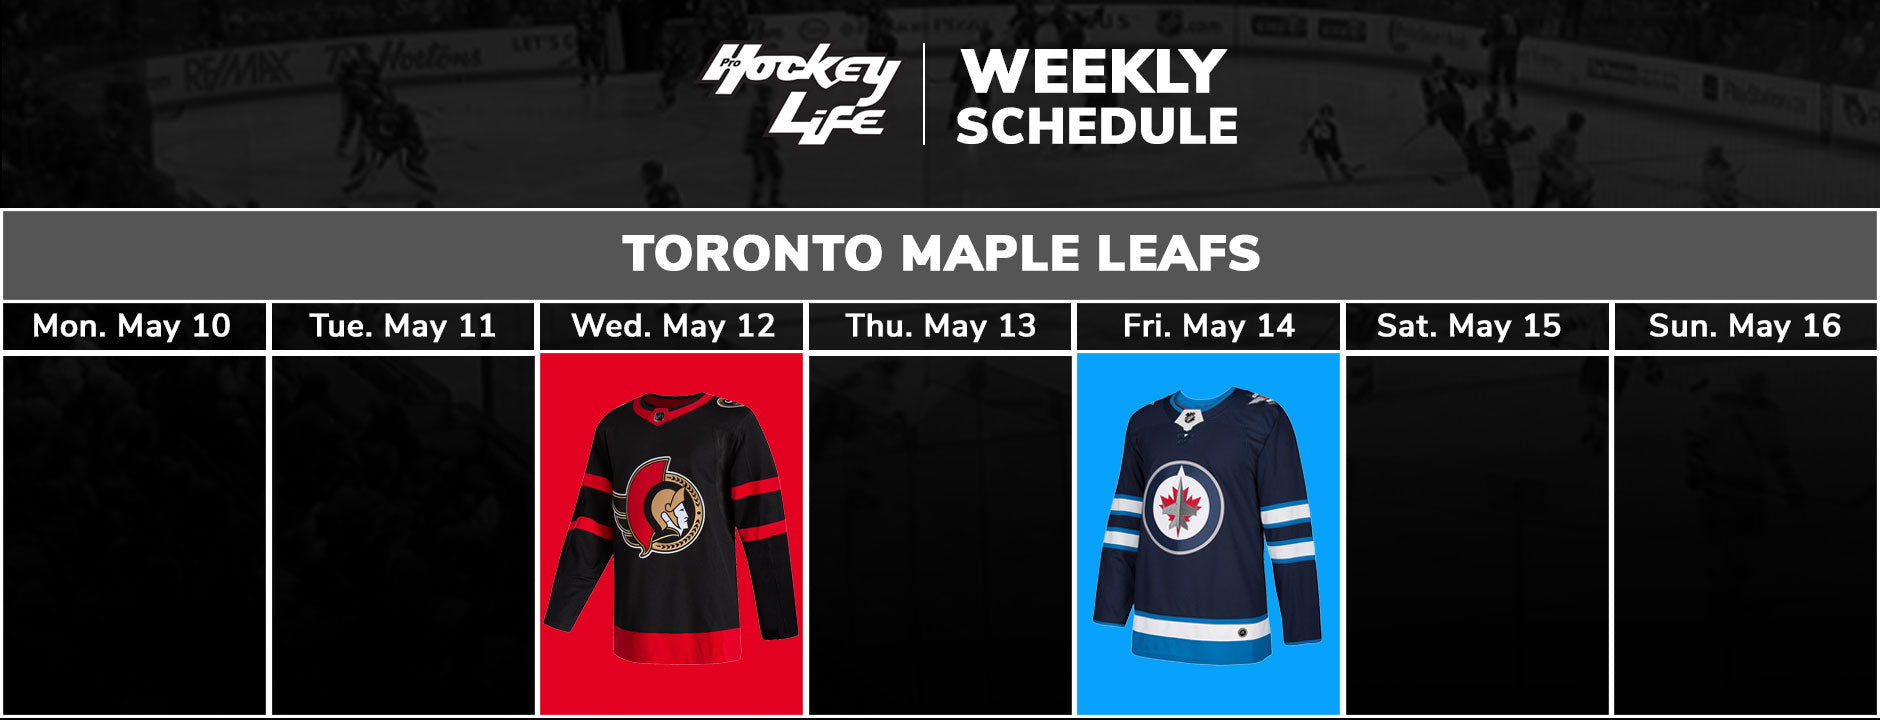 EToronto Maple Leafs Schedule